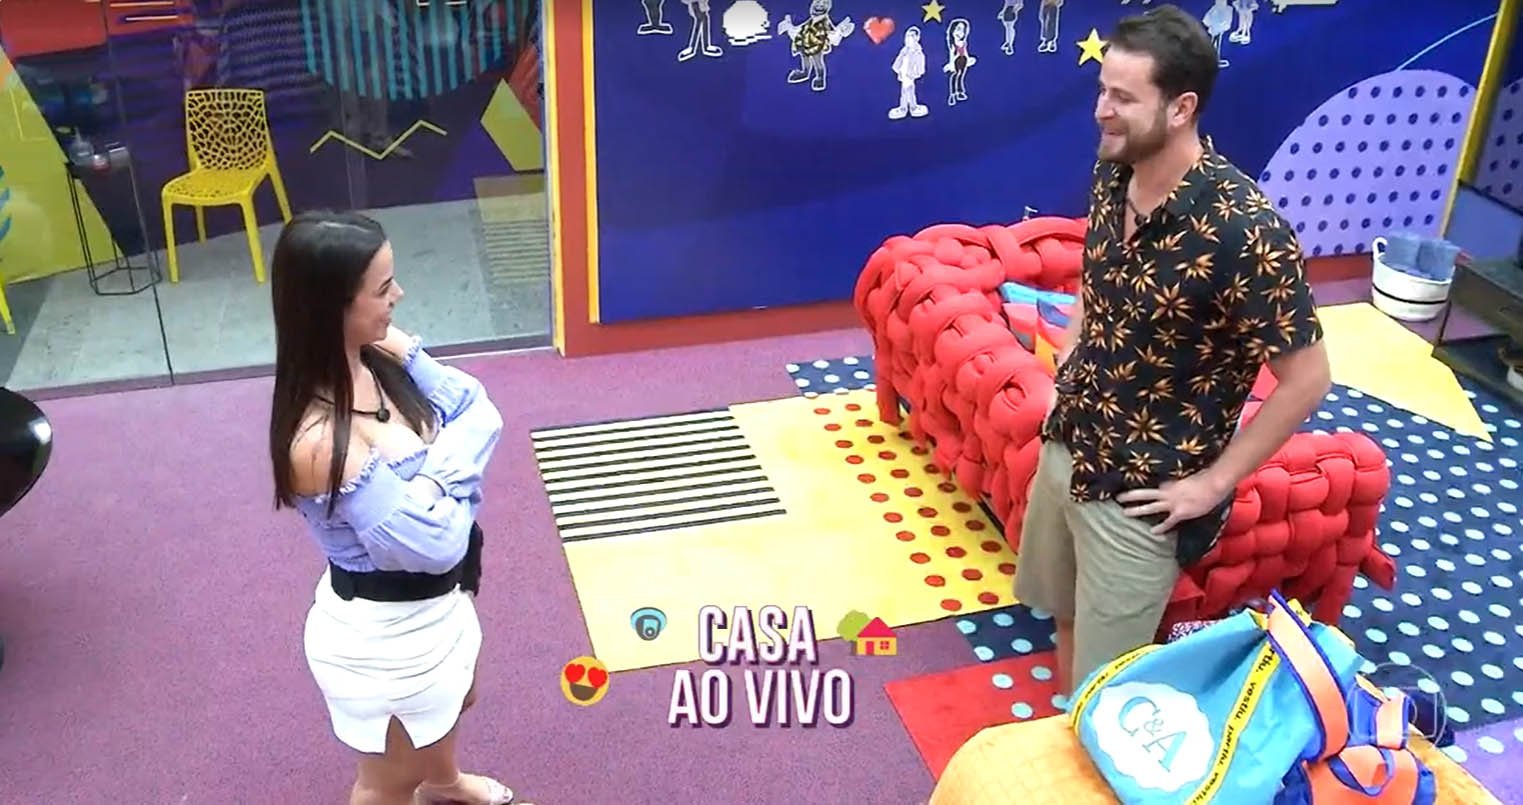 Casa de Vidro já começou no BBB 22 - Crédito: Globo